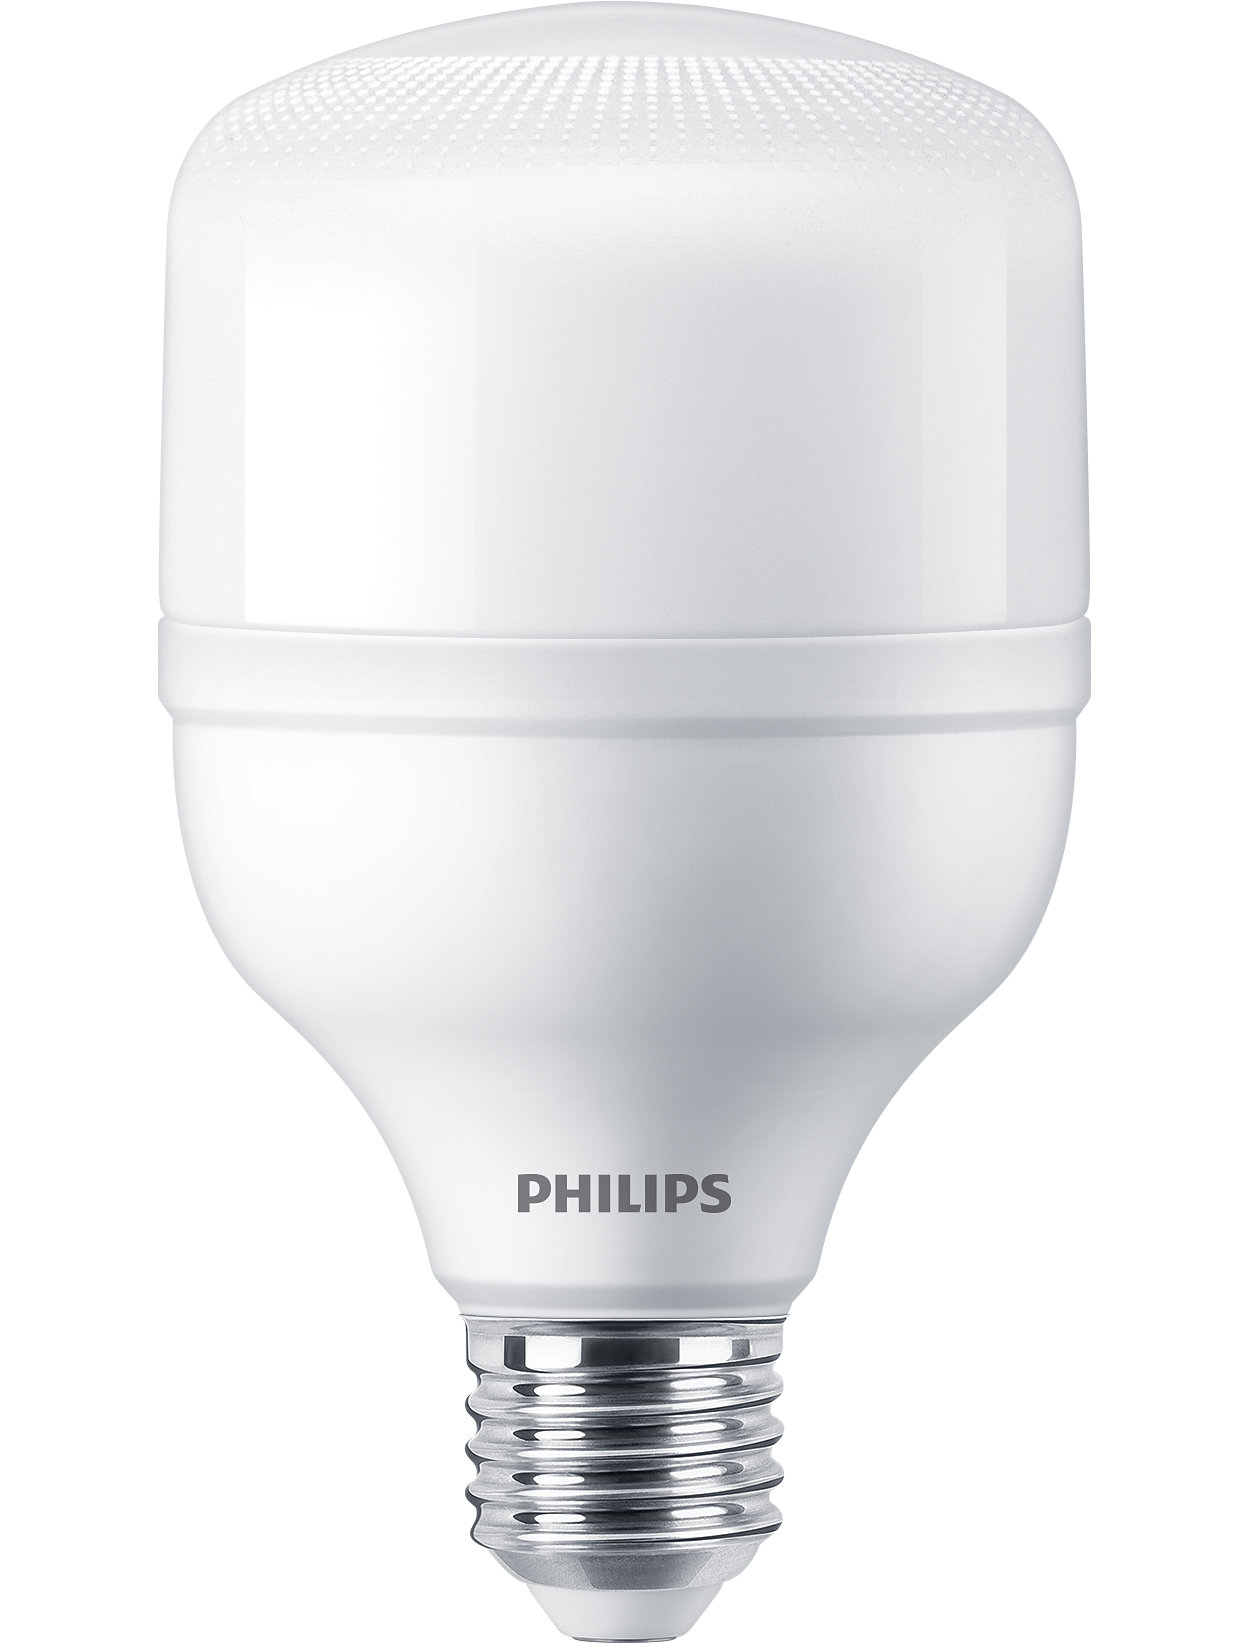 La mejor solución LED para sustitución de lámparas de descarga de alta intensidad (HID)